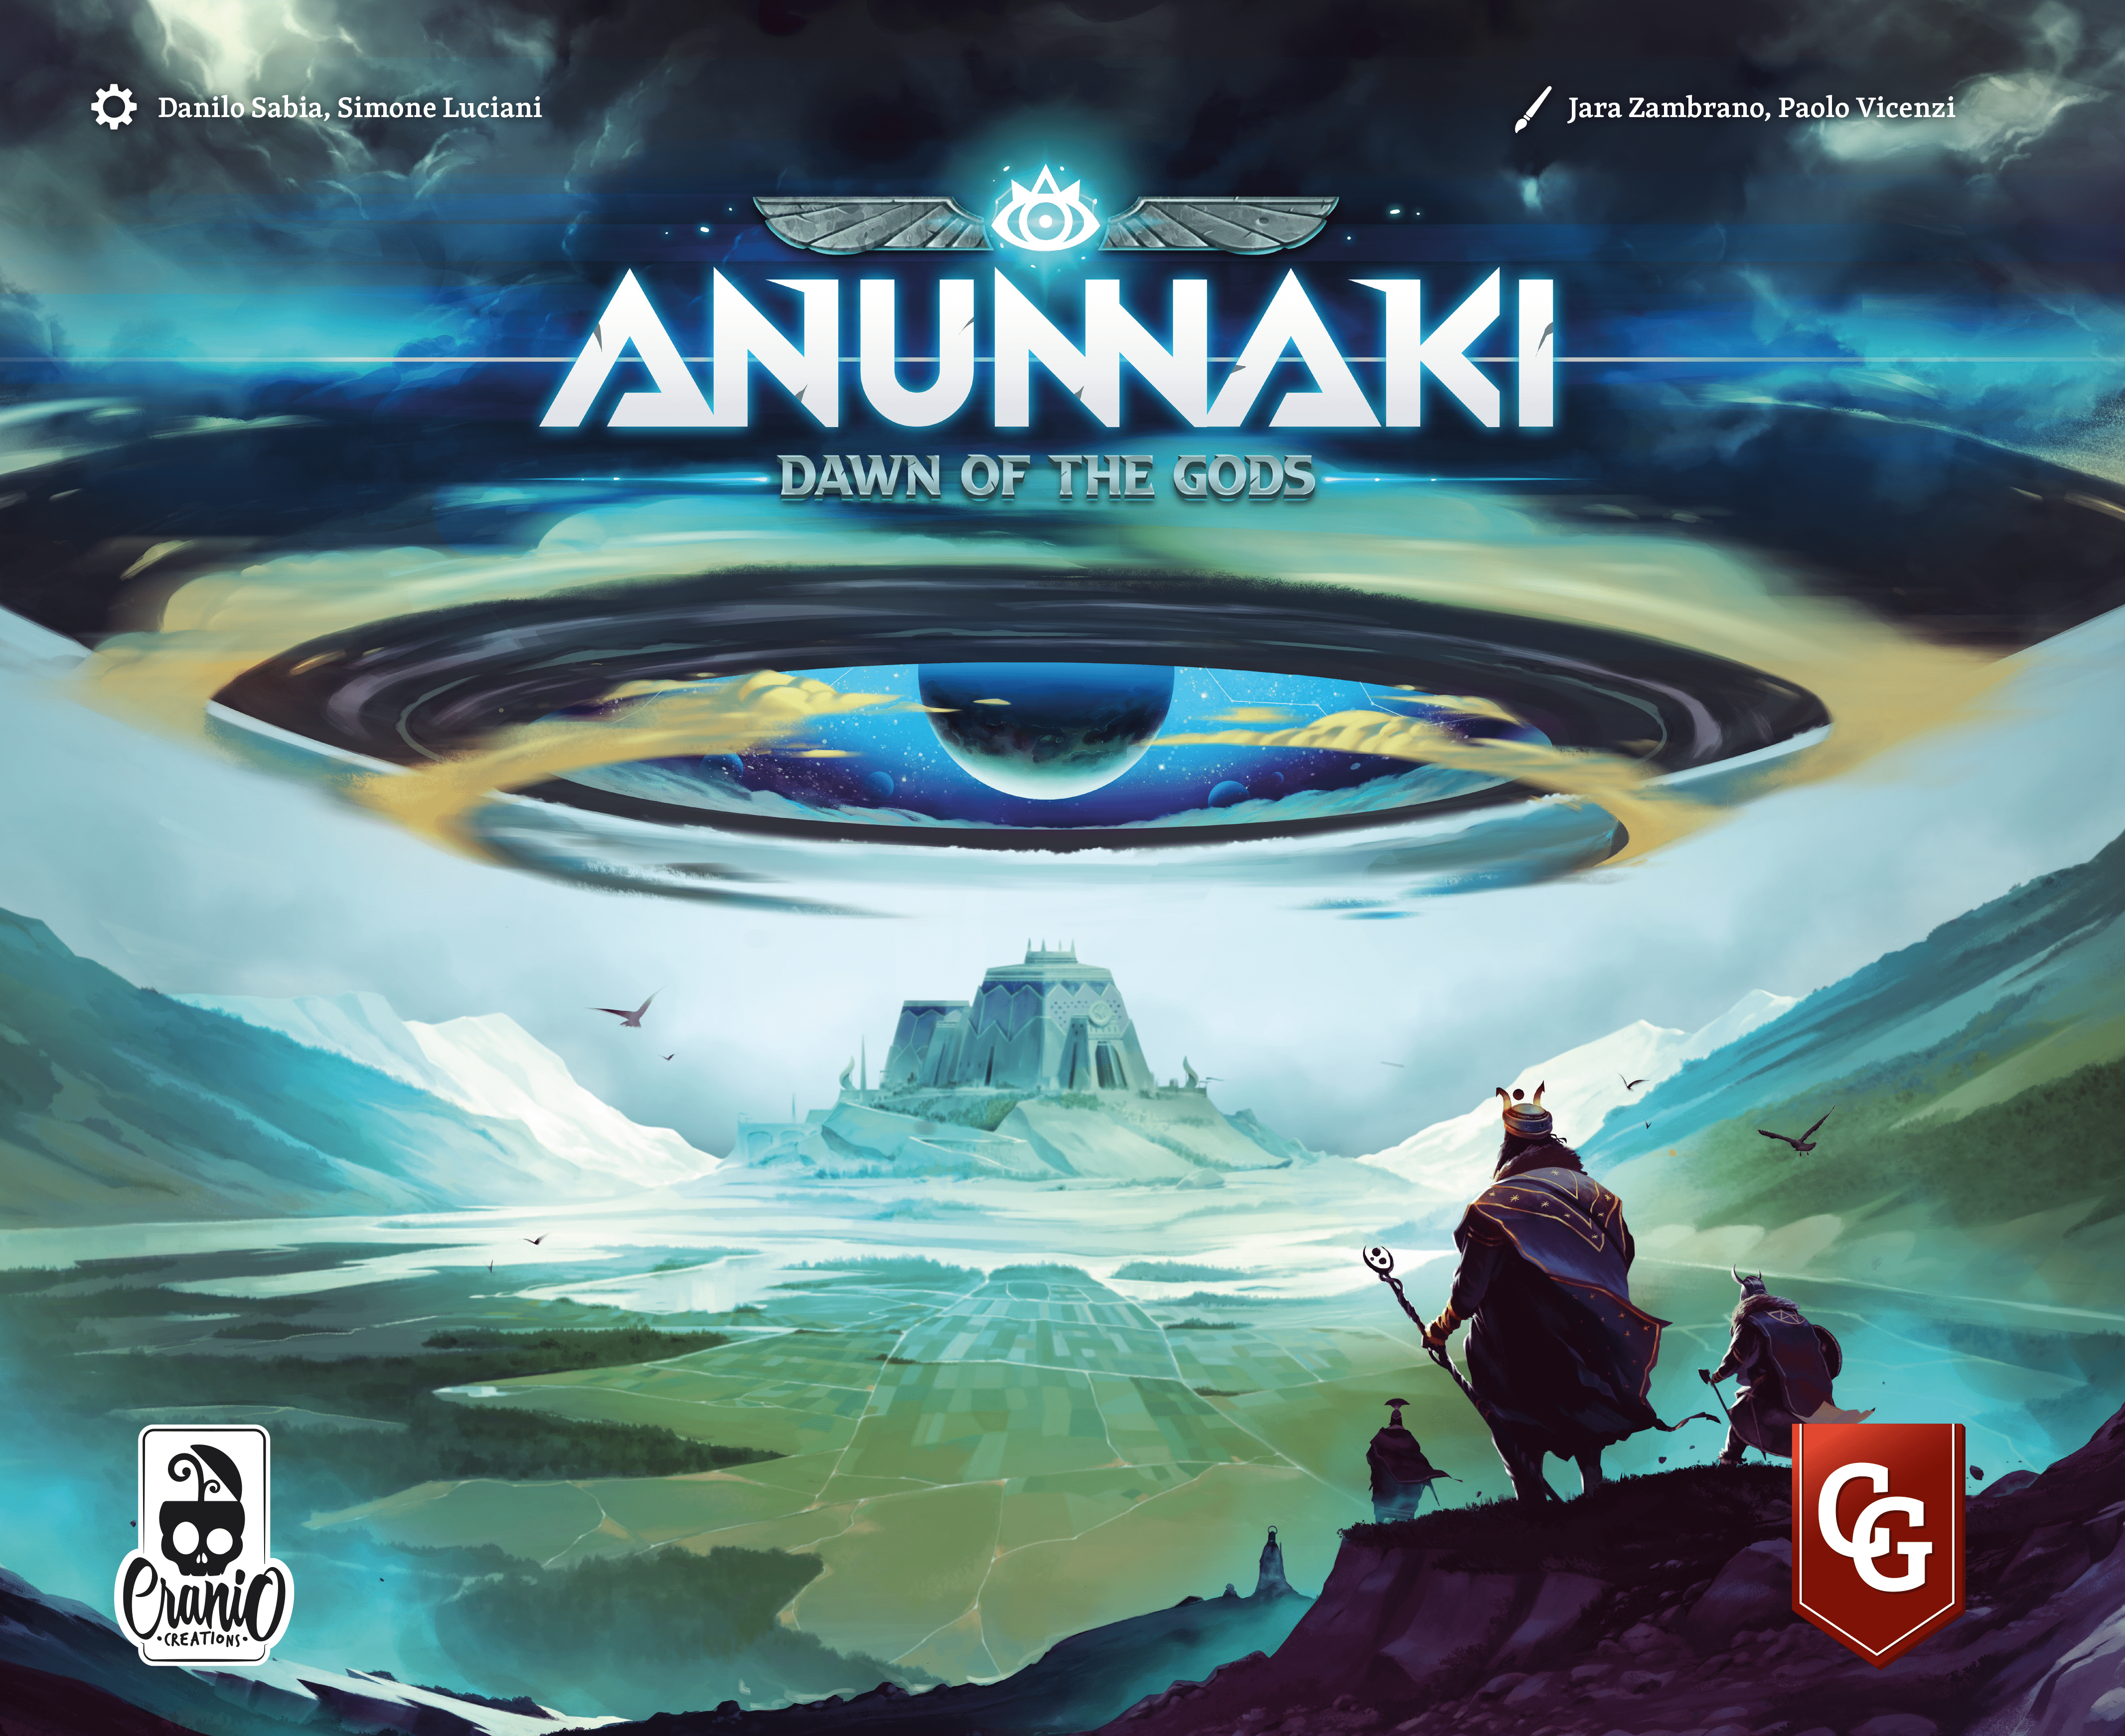 Anunnaki: Dawn of the Gods